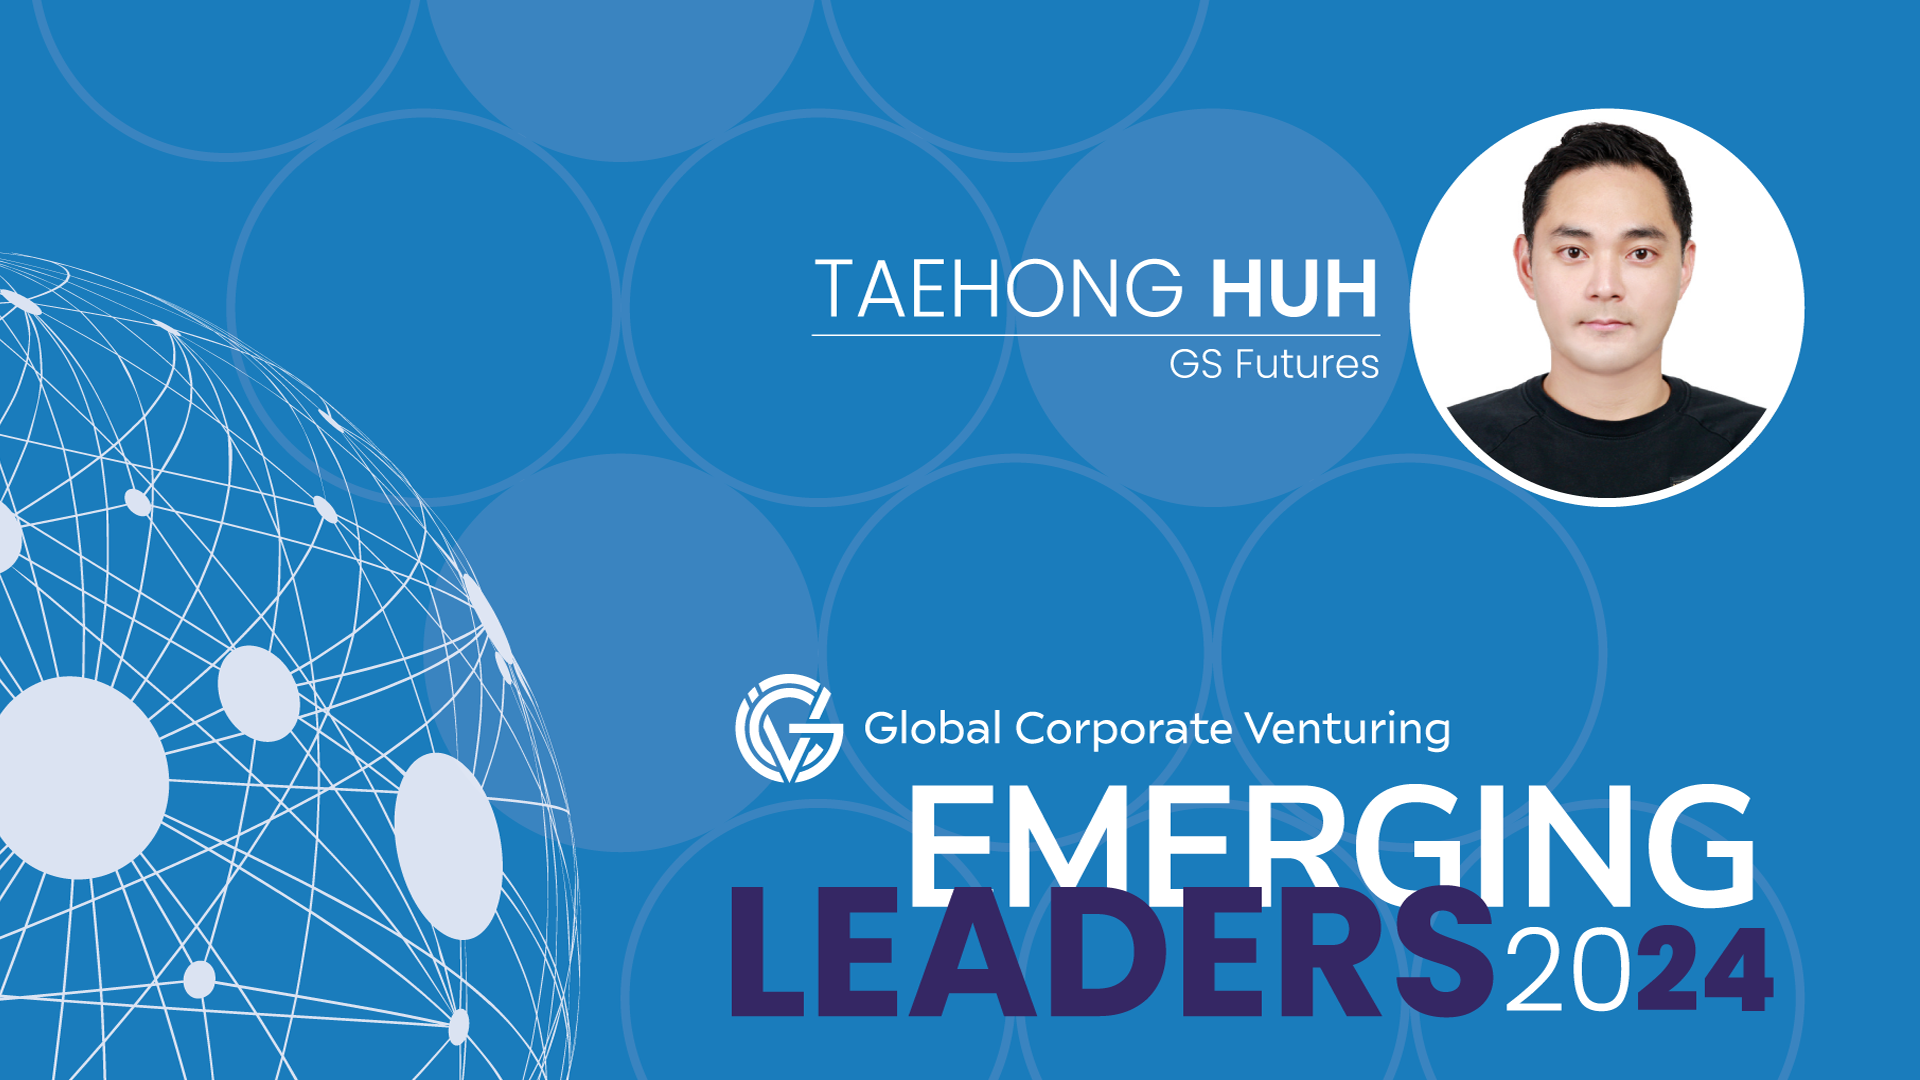 Taehong Huh, GS Futures